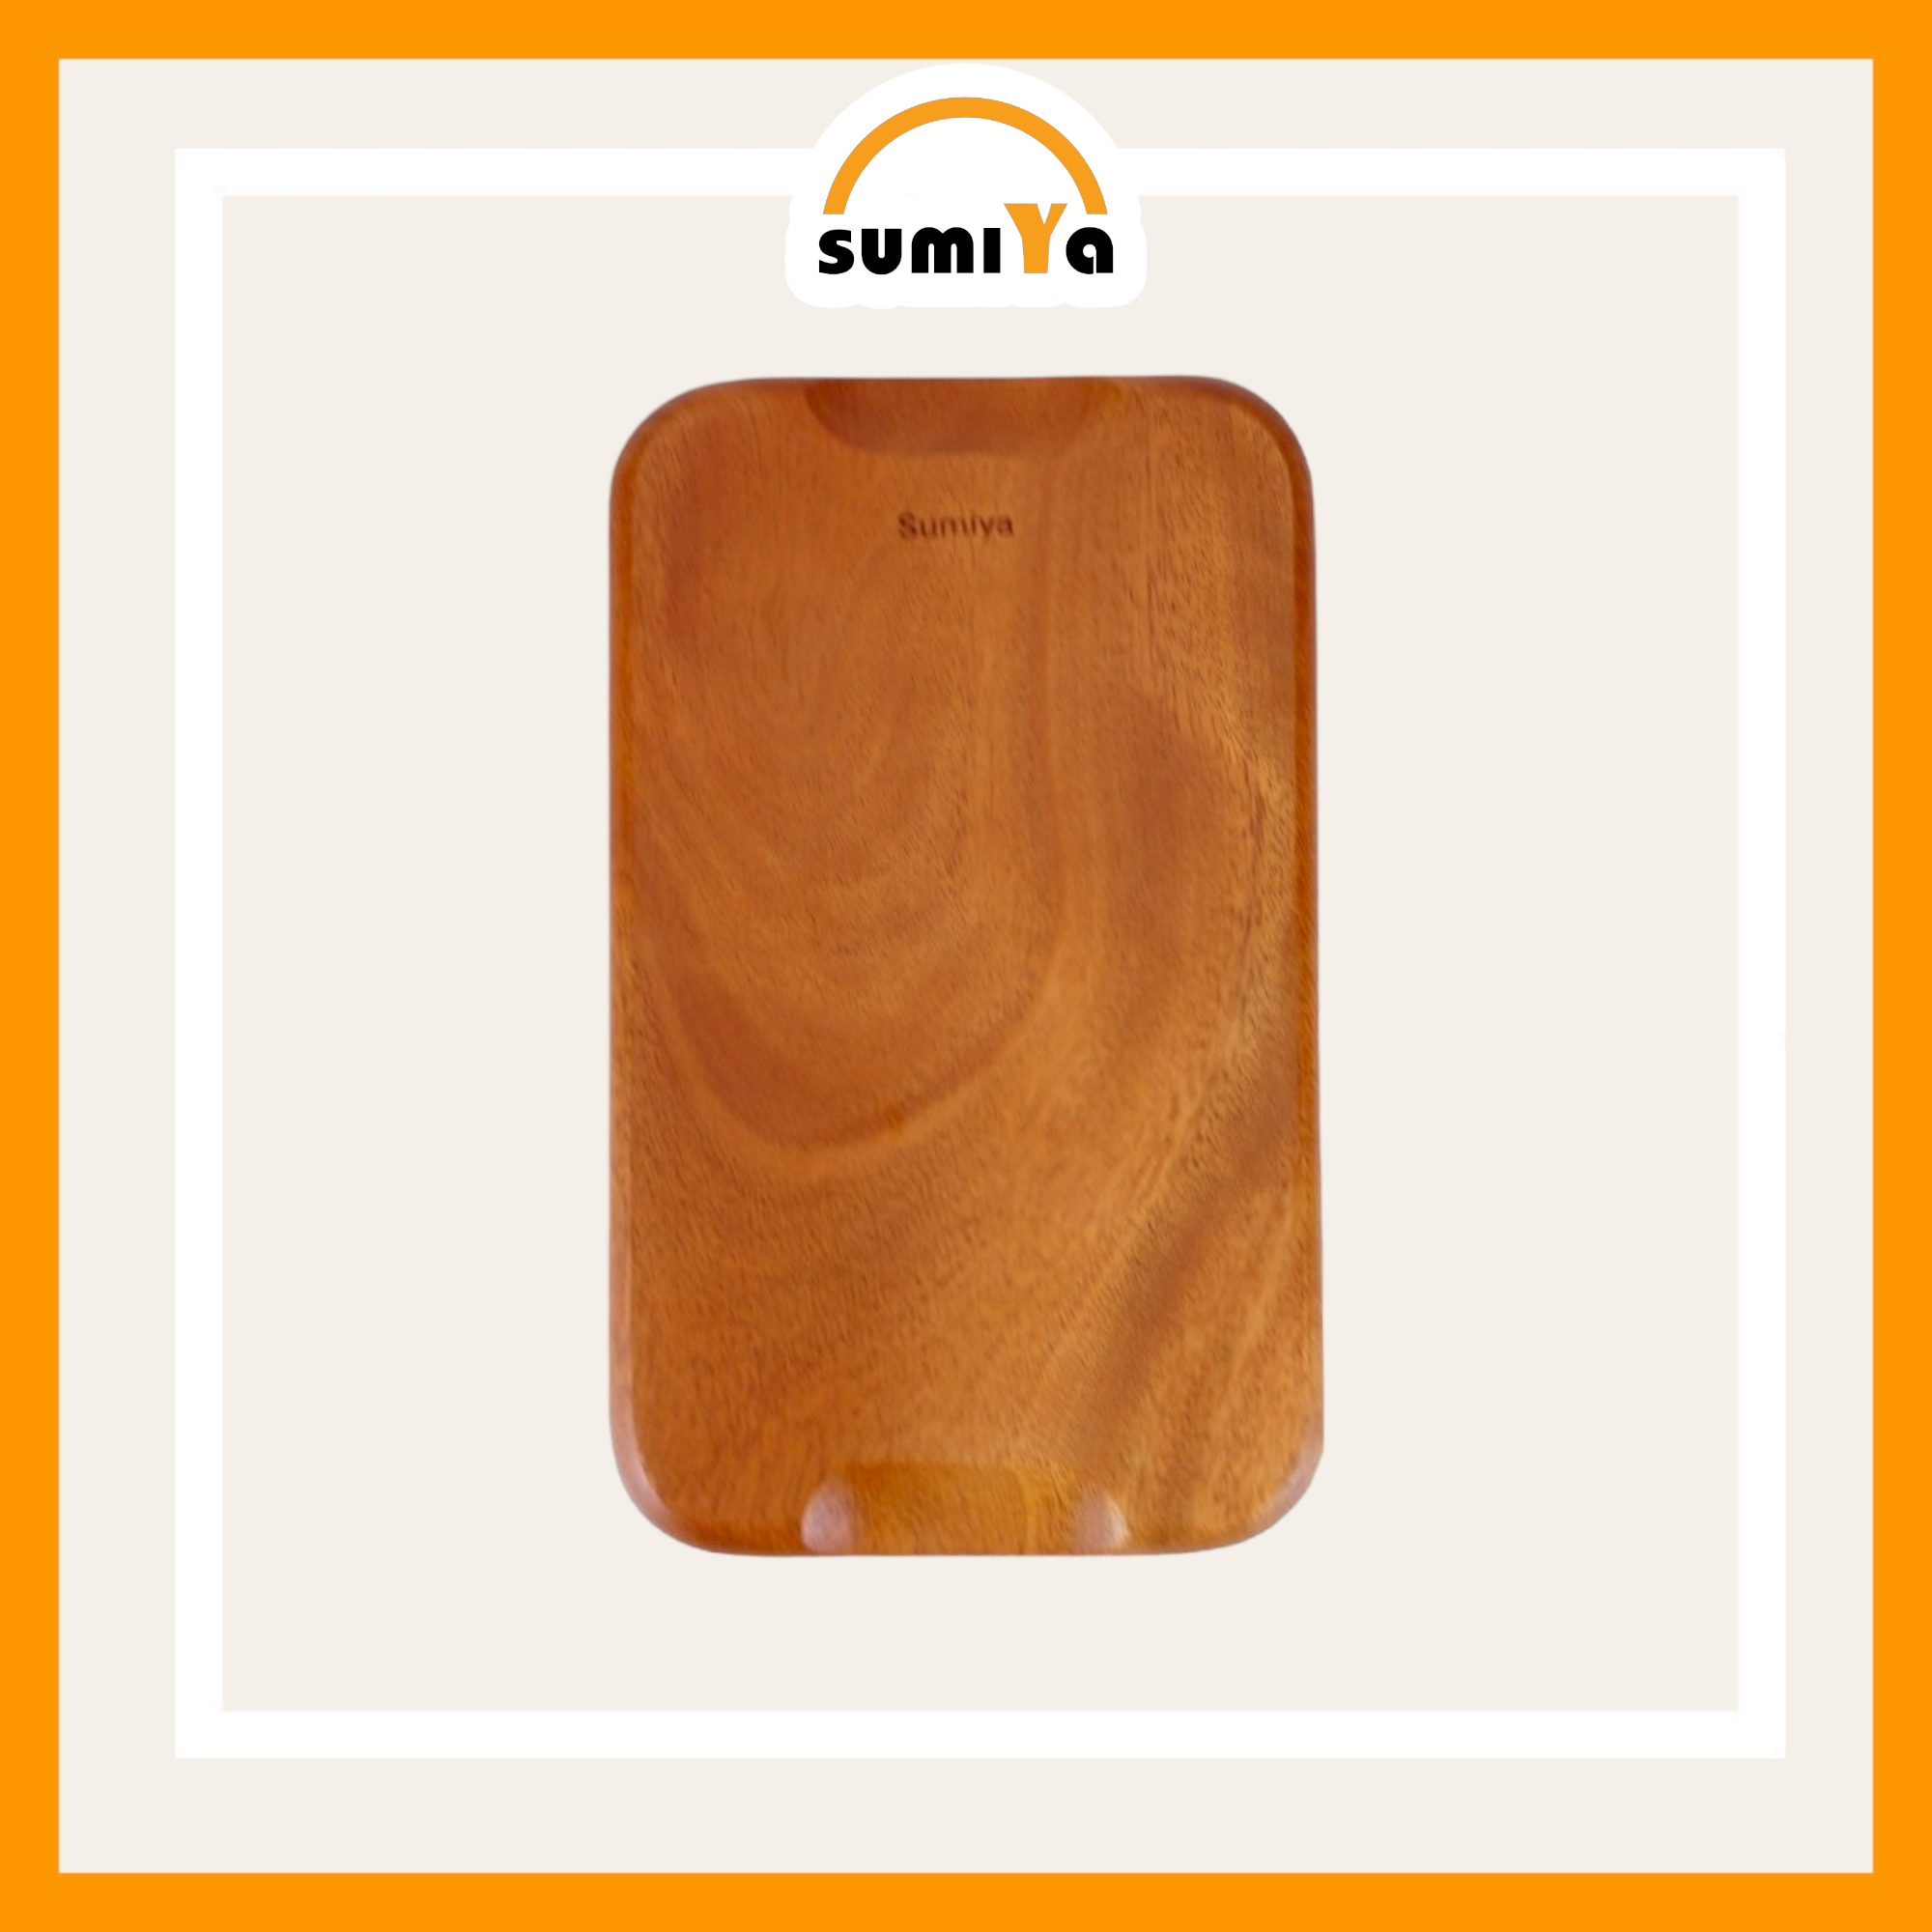 Khay gỗ hình chữ nhật, khay gỗ dùng để trà bánh, decor hoặc làm phụ kiện chụp ảnh